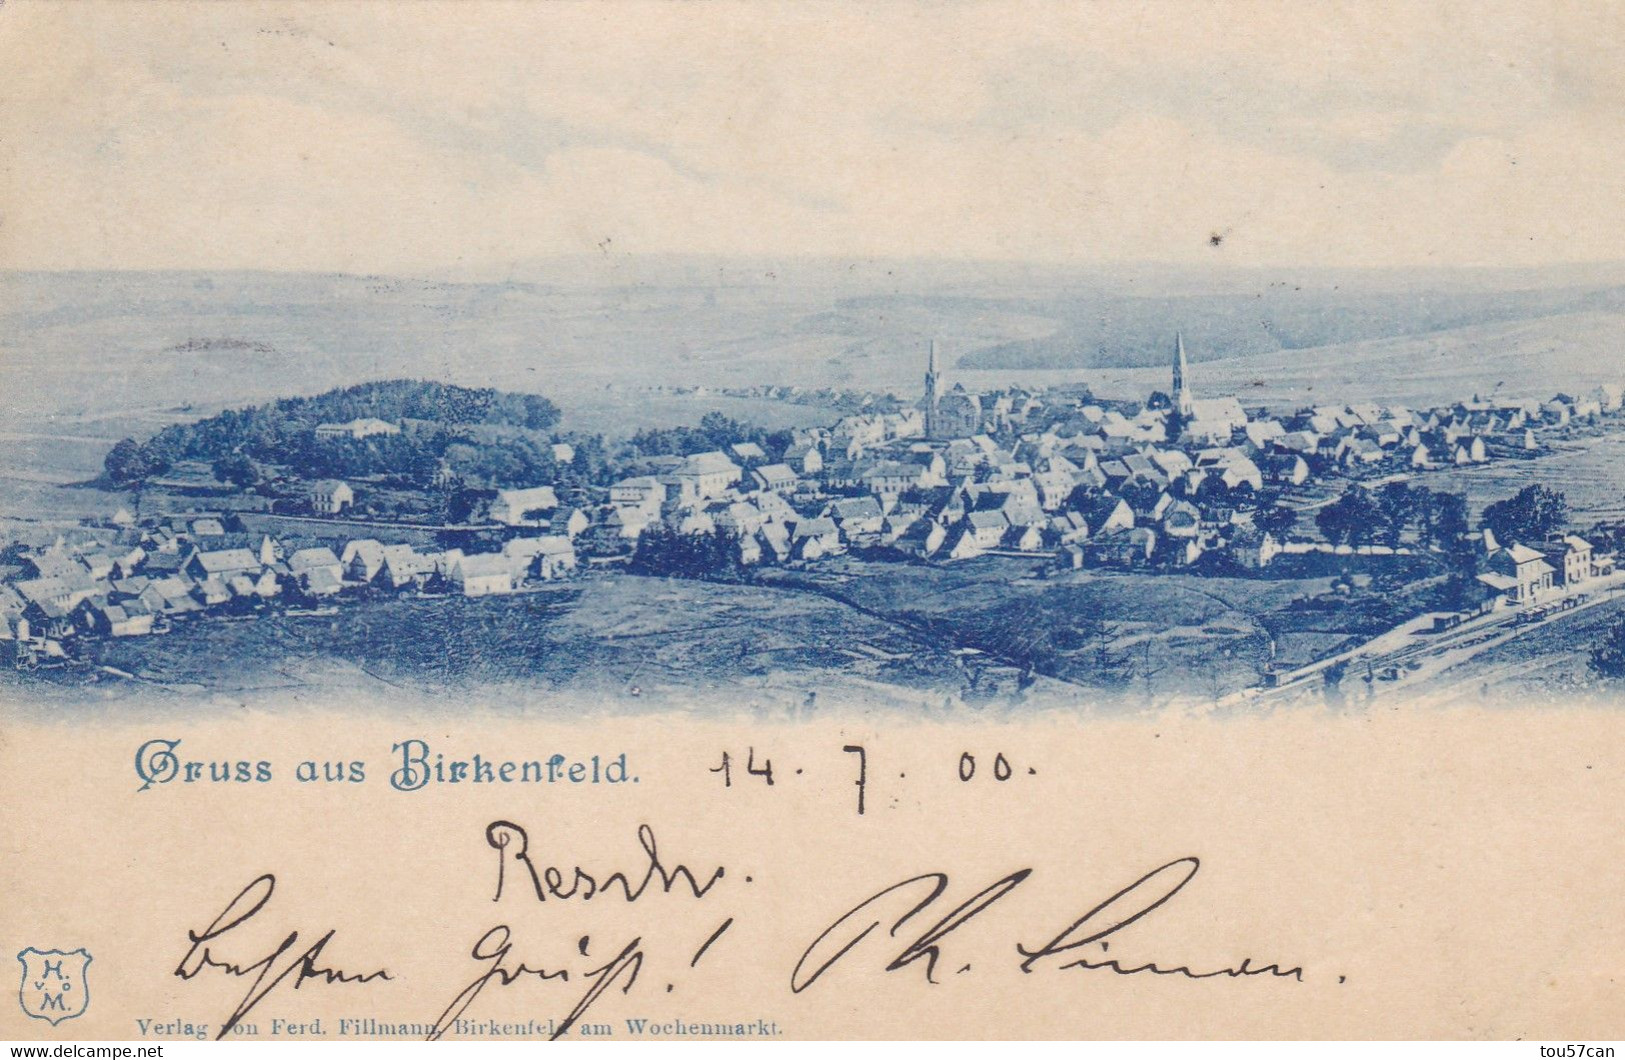 BIRKENFELD - RHEINLAND-PFALZ - DEUTSCHLAND - ANSICHTKARTE 1900... - Birkenfeld (Nahe)